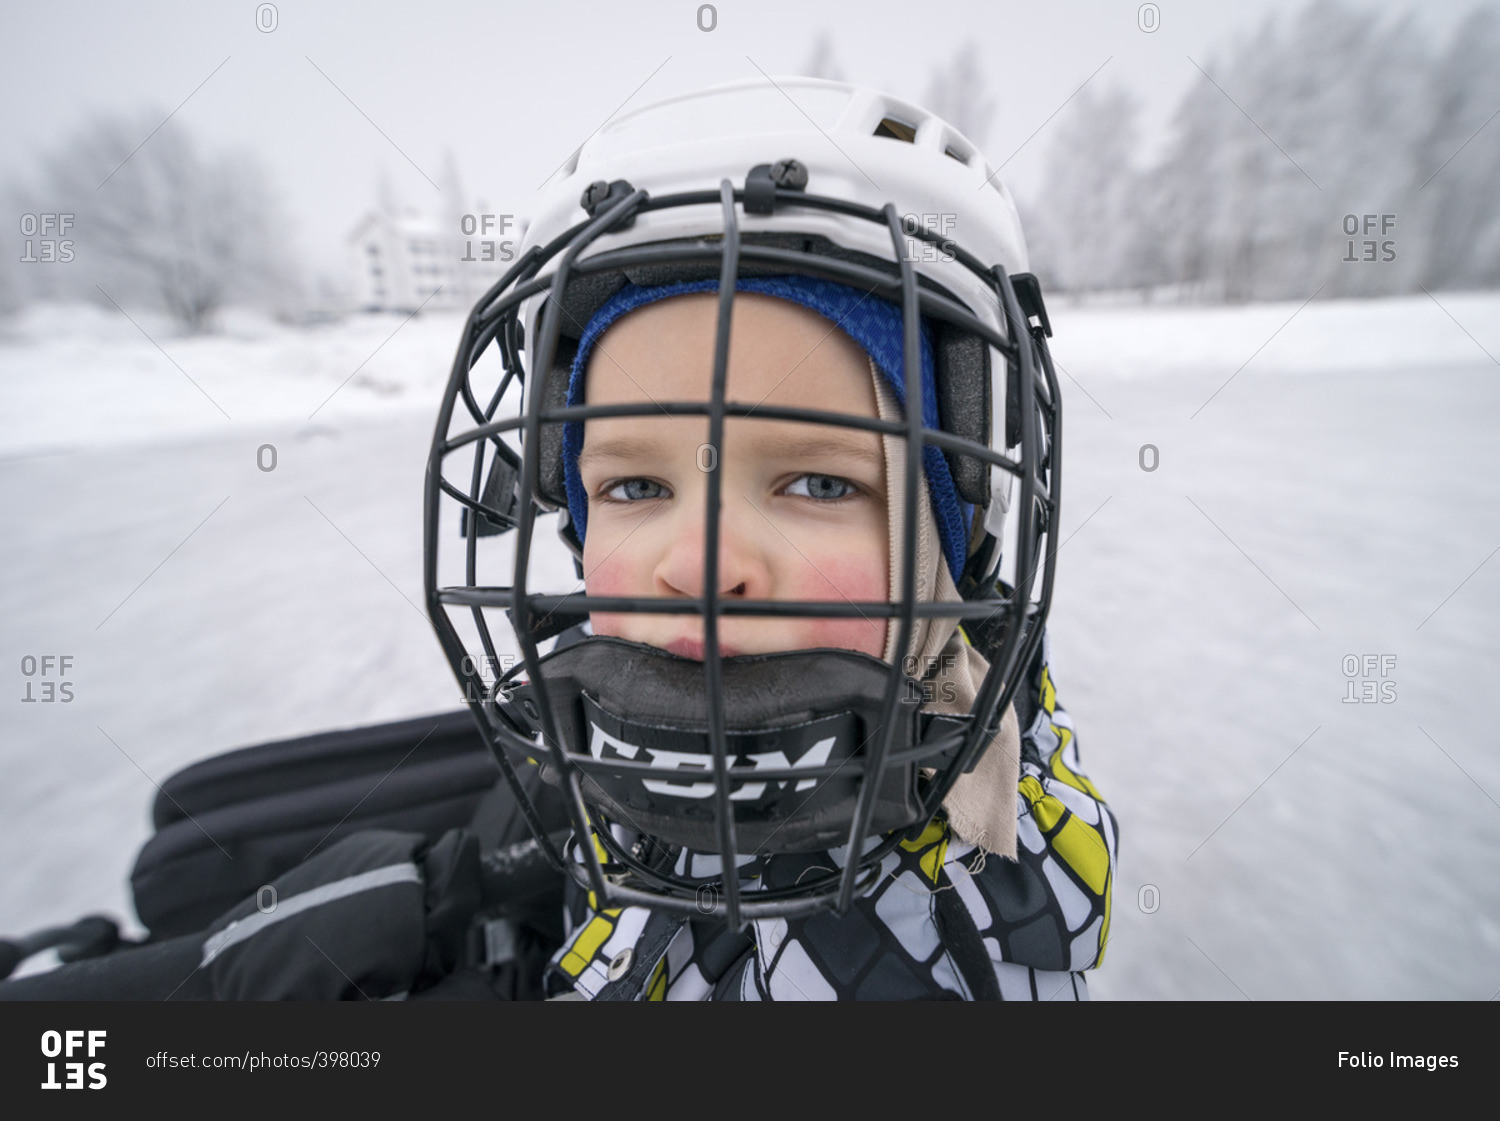 Finland, Pohjois-Pohjanmaa, Oulu, Portrait of boy in ice hockey helmet